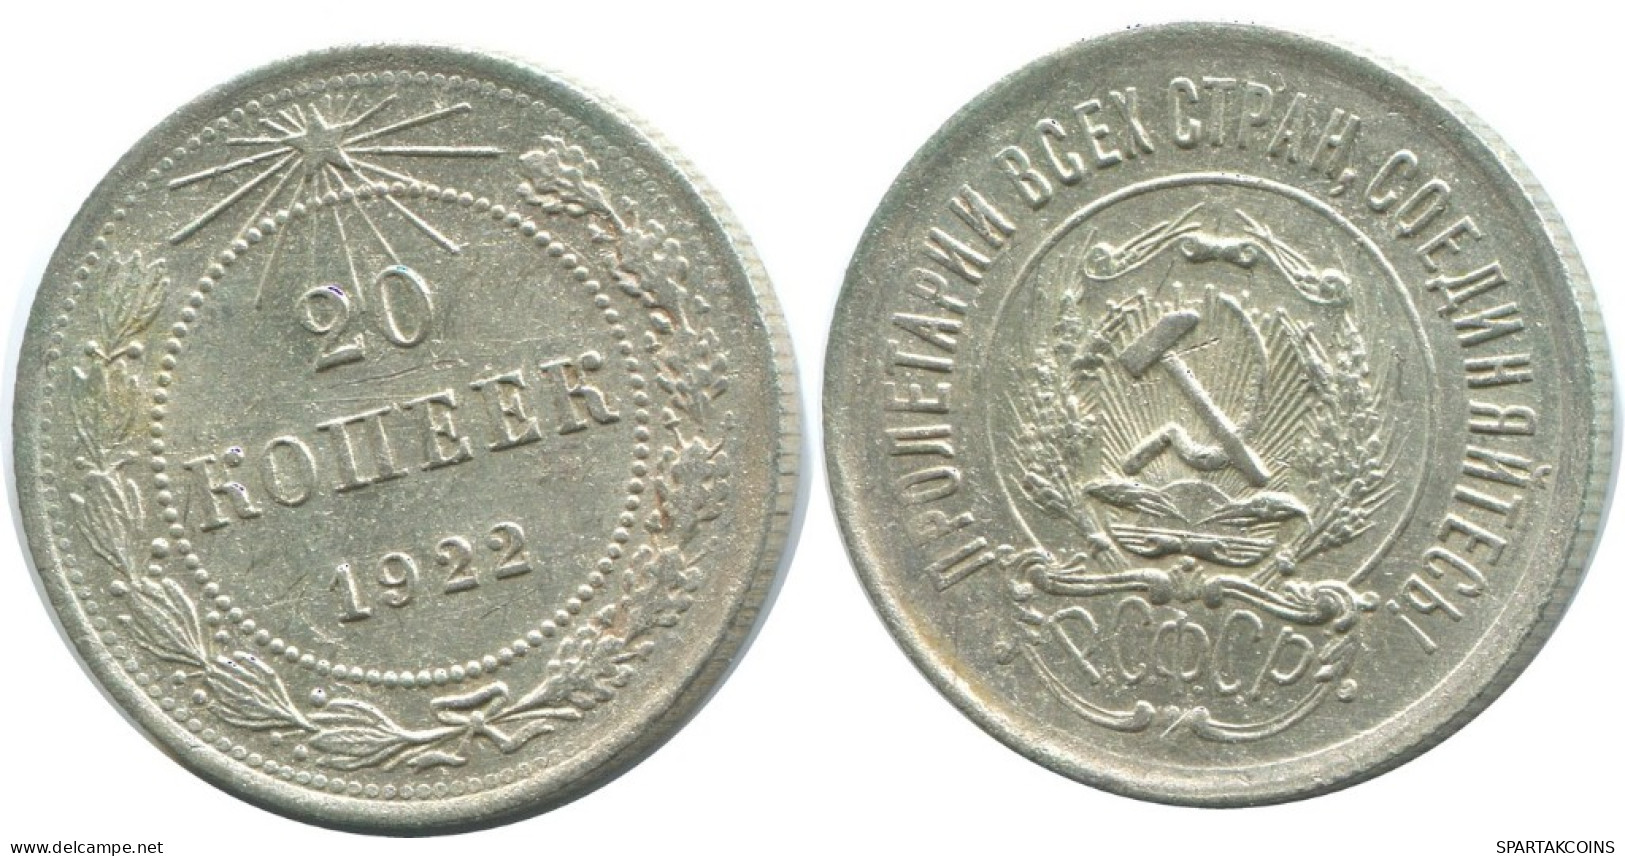 20 KOPEKS 1923 RUSSIA RSFSR SILVER Coin HIGH GRADE #AF361.4.U.A - Russland